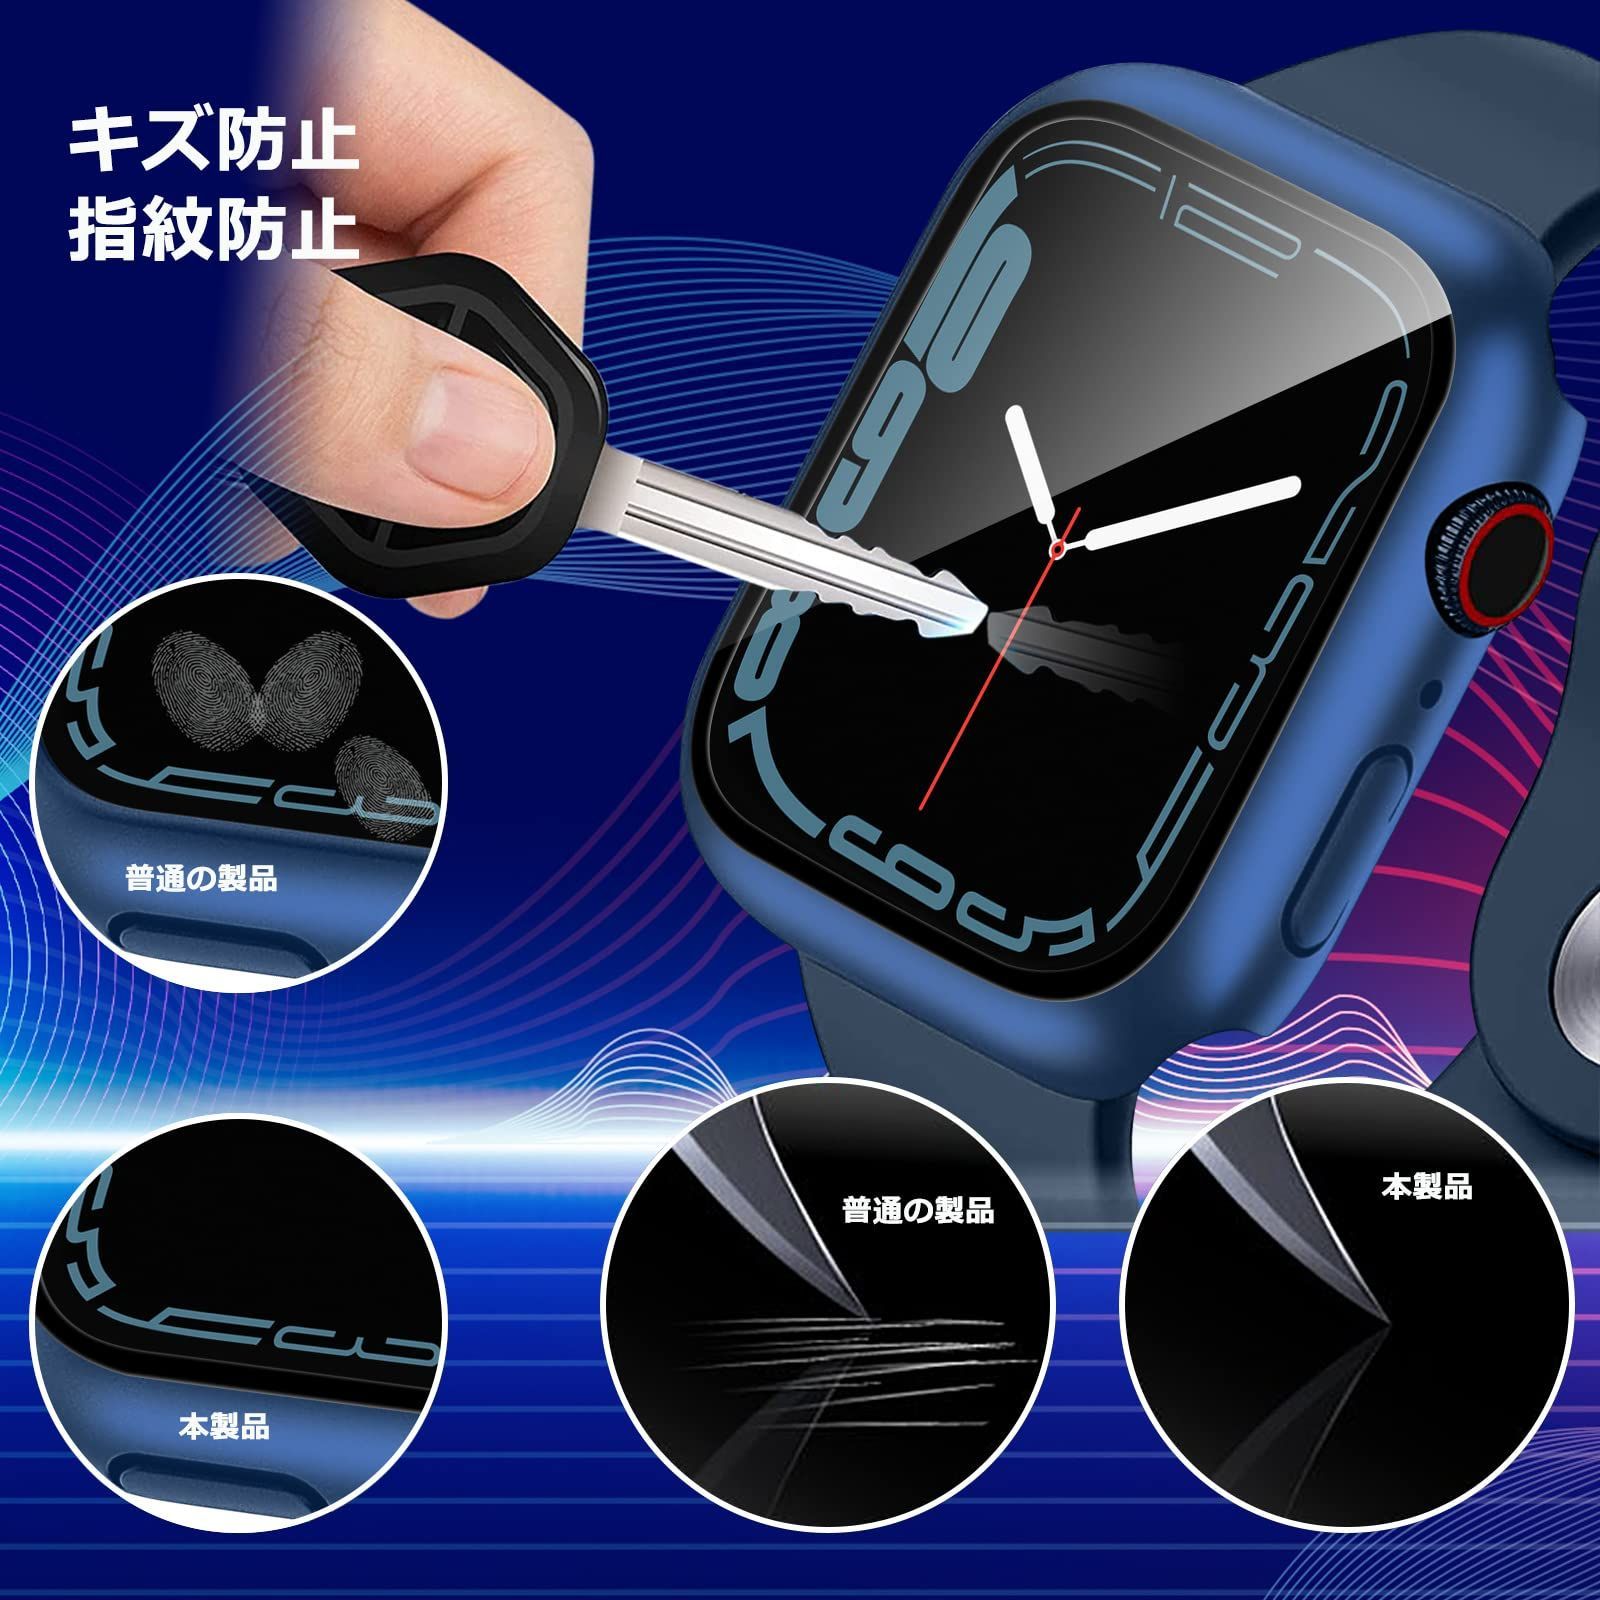 Applewatch Series 7逕ｨ 41mm繧ｫ繝舌�ｼ 鬮俶─蠎ｦ 繧ｪ繝ｪ繧ｸ繝翫Ν謾ｹ濶ｯ - 5